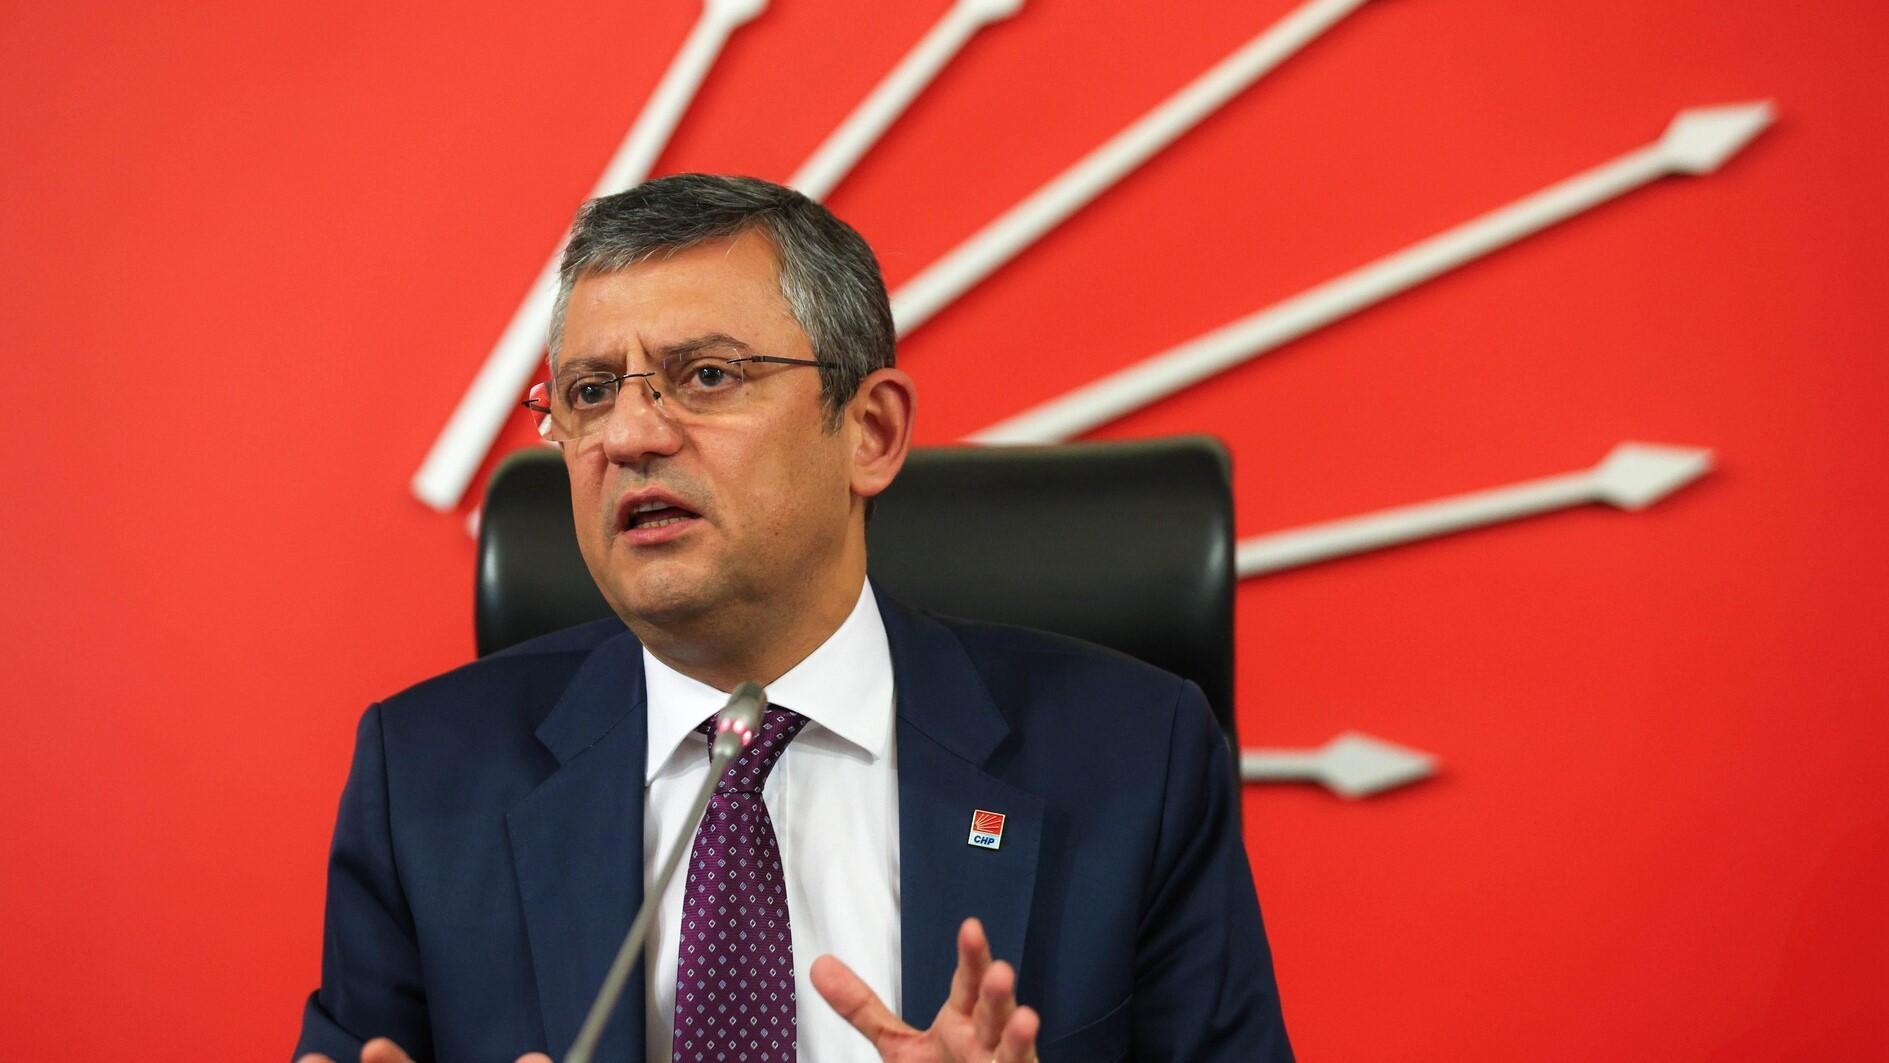 CHP-leider wijst op de mogelijkheid van vervroegde verkiezingen